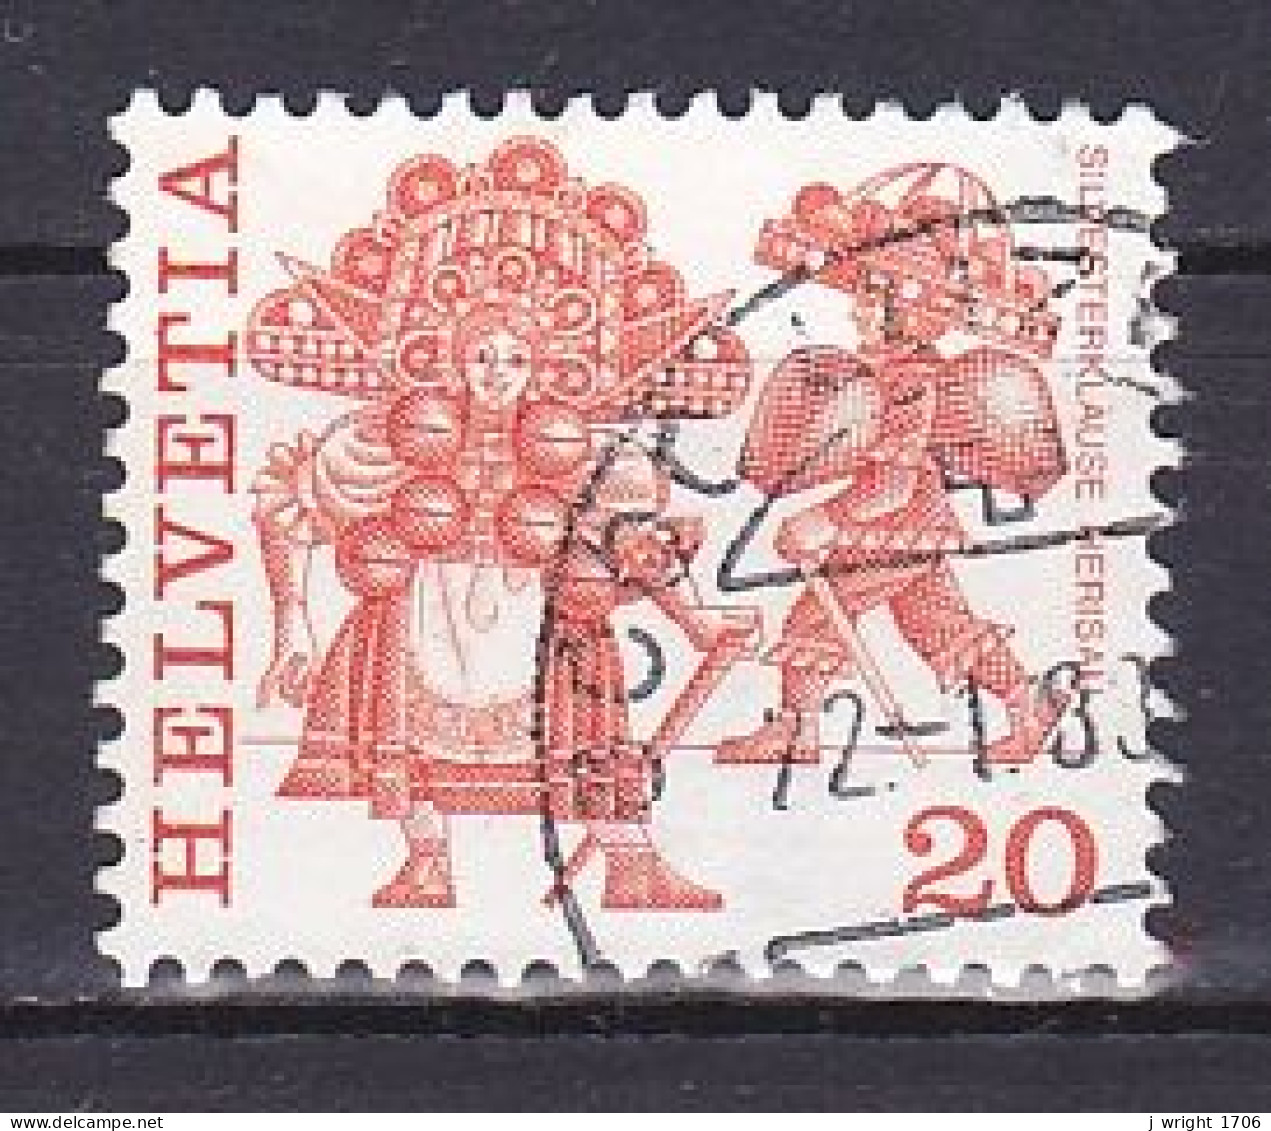 Switzerland, 1977, Folk Customs/Silvesterkläuse Herisau, 20c, USED - Used Stamps